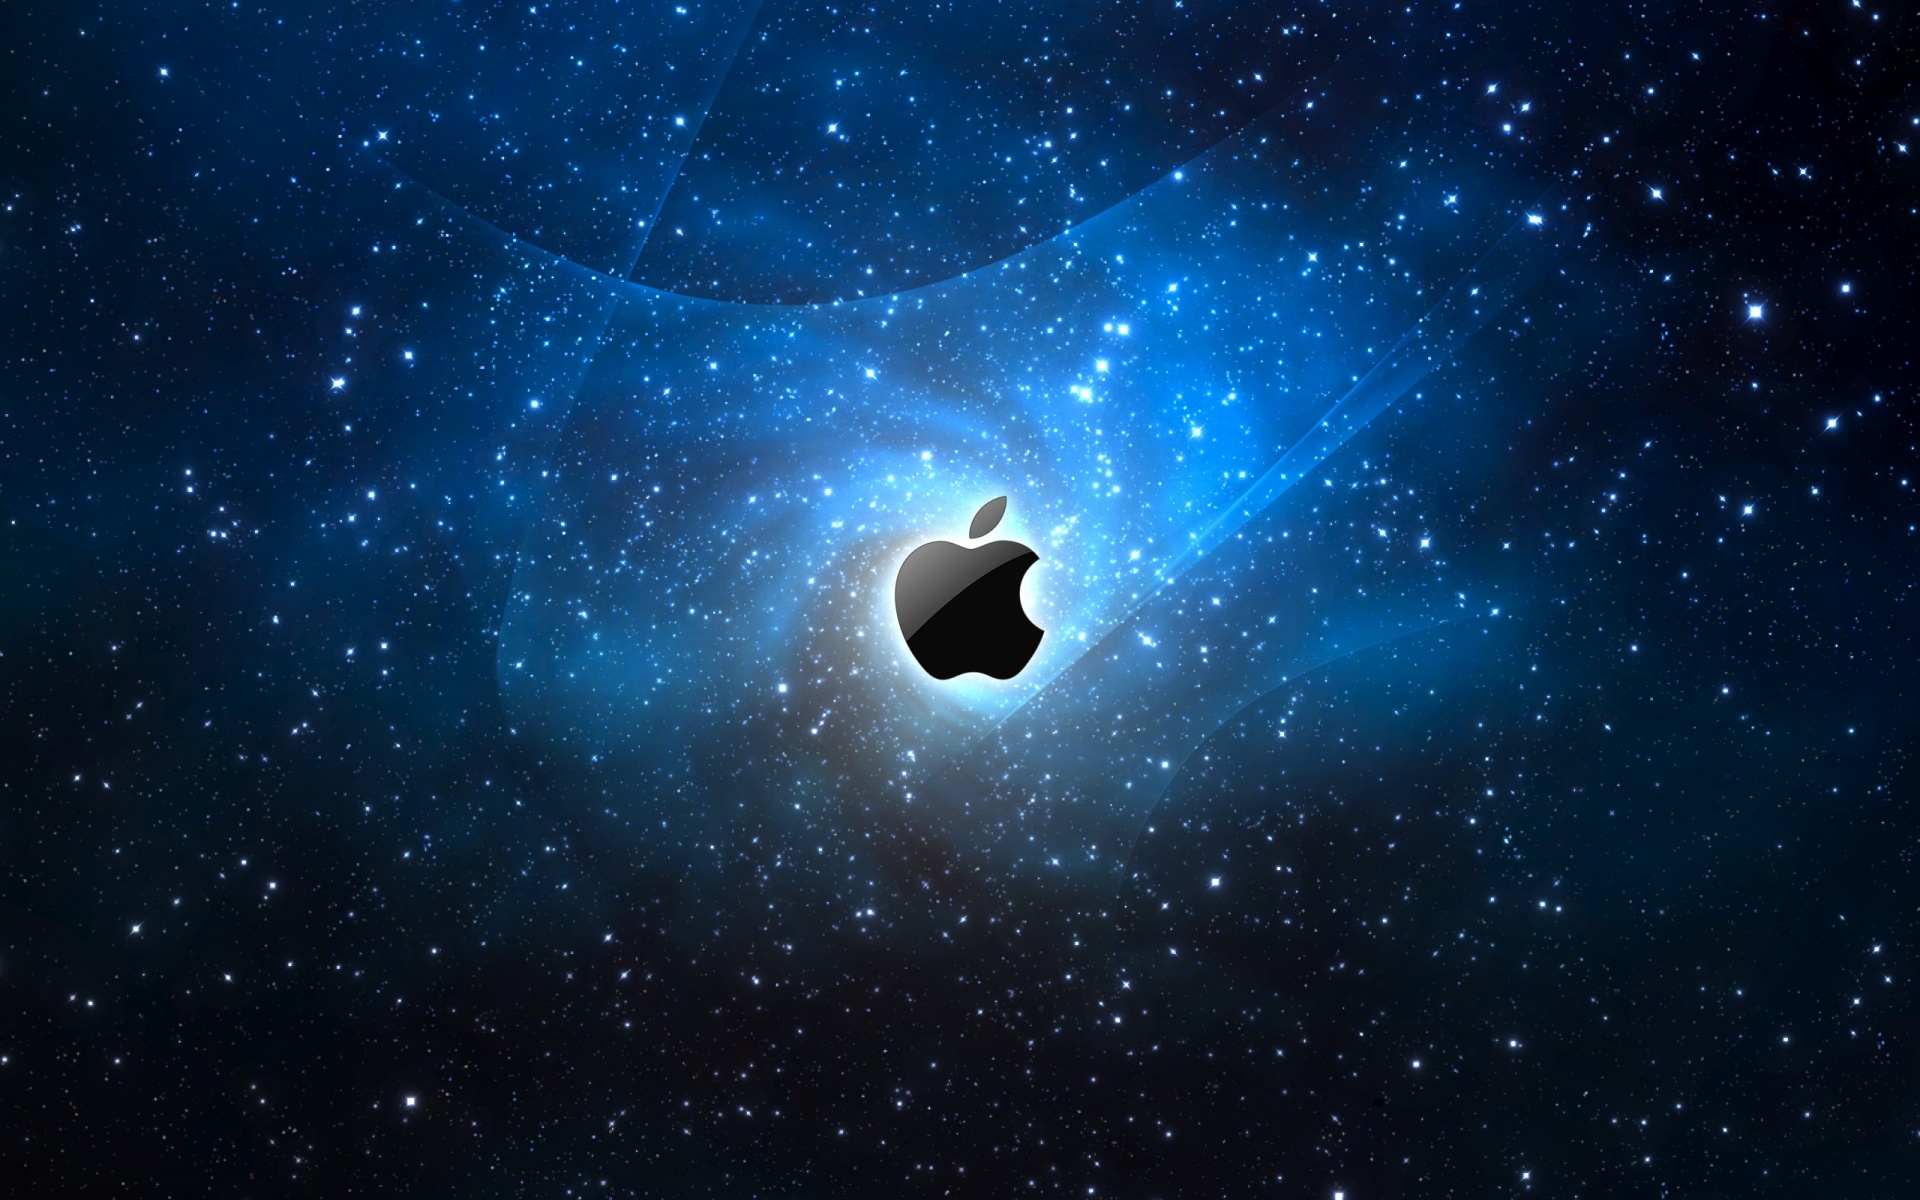 Hình nền không gian ngôi sao của Apple sẽ khiến cho màn hình của bạn trở nên đầy phong cách và sự tinh tế. Hình ảnh không gian và ngôi sao đã từ lâu trở thành một chủ đề dễ thương và đầy nghệ thuật. Hãy xem hình ảnh liên quan để khám phá tất cả các hình nền không gian ngôi sao của Apple.